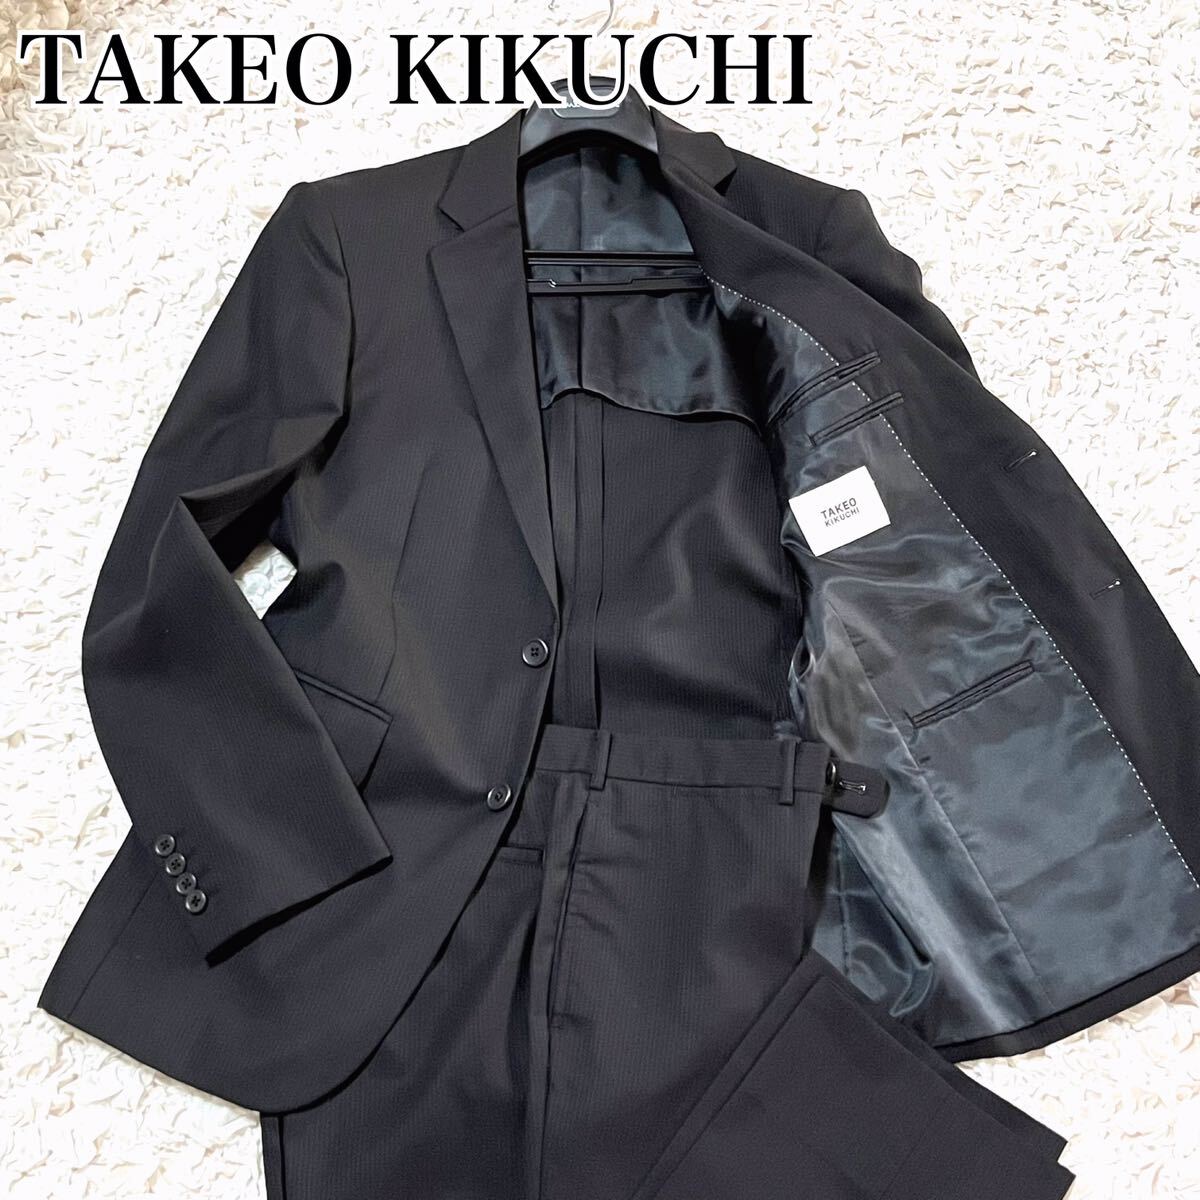 至極の一品 美品 TAKEO KIKUCHI タケオキクチ スーツ セットアップ 背抜き ストライプ ビジネス シングル 大きめ ウール 黒 ブラック 3 L